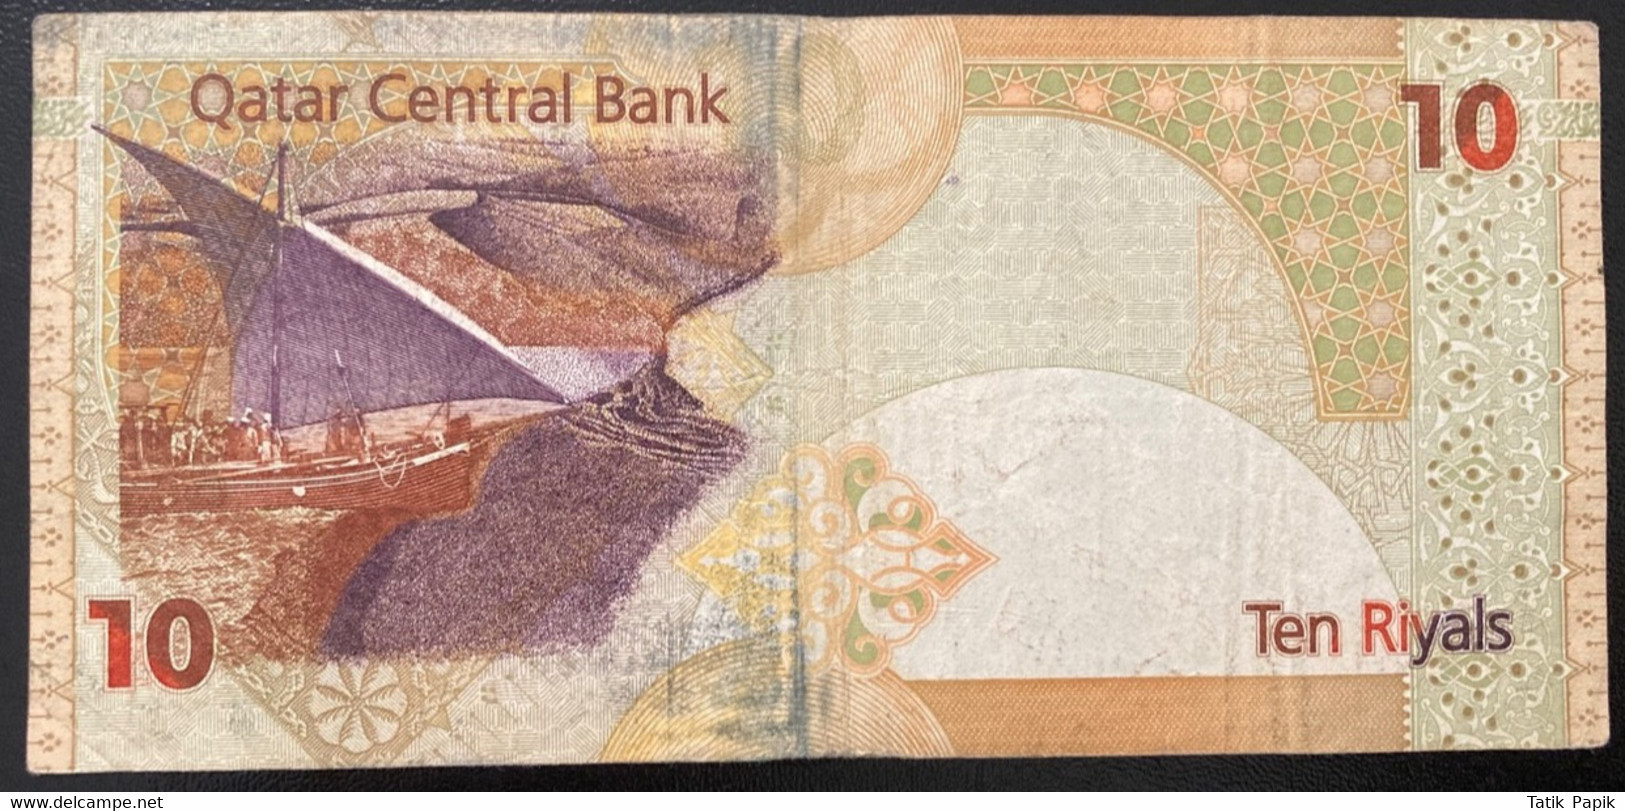 10 Riyals Qatar Central Bank Used Hologram - Qatar